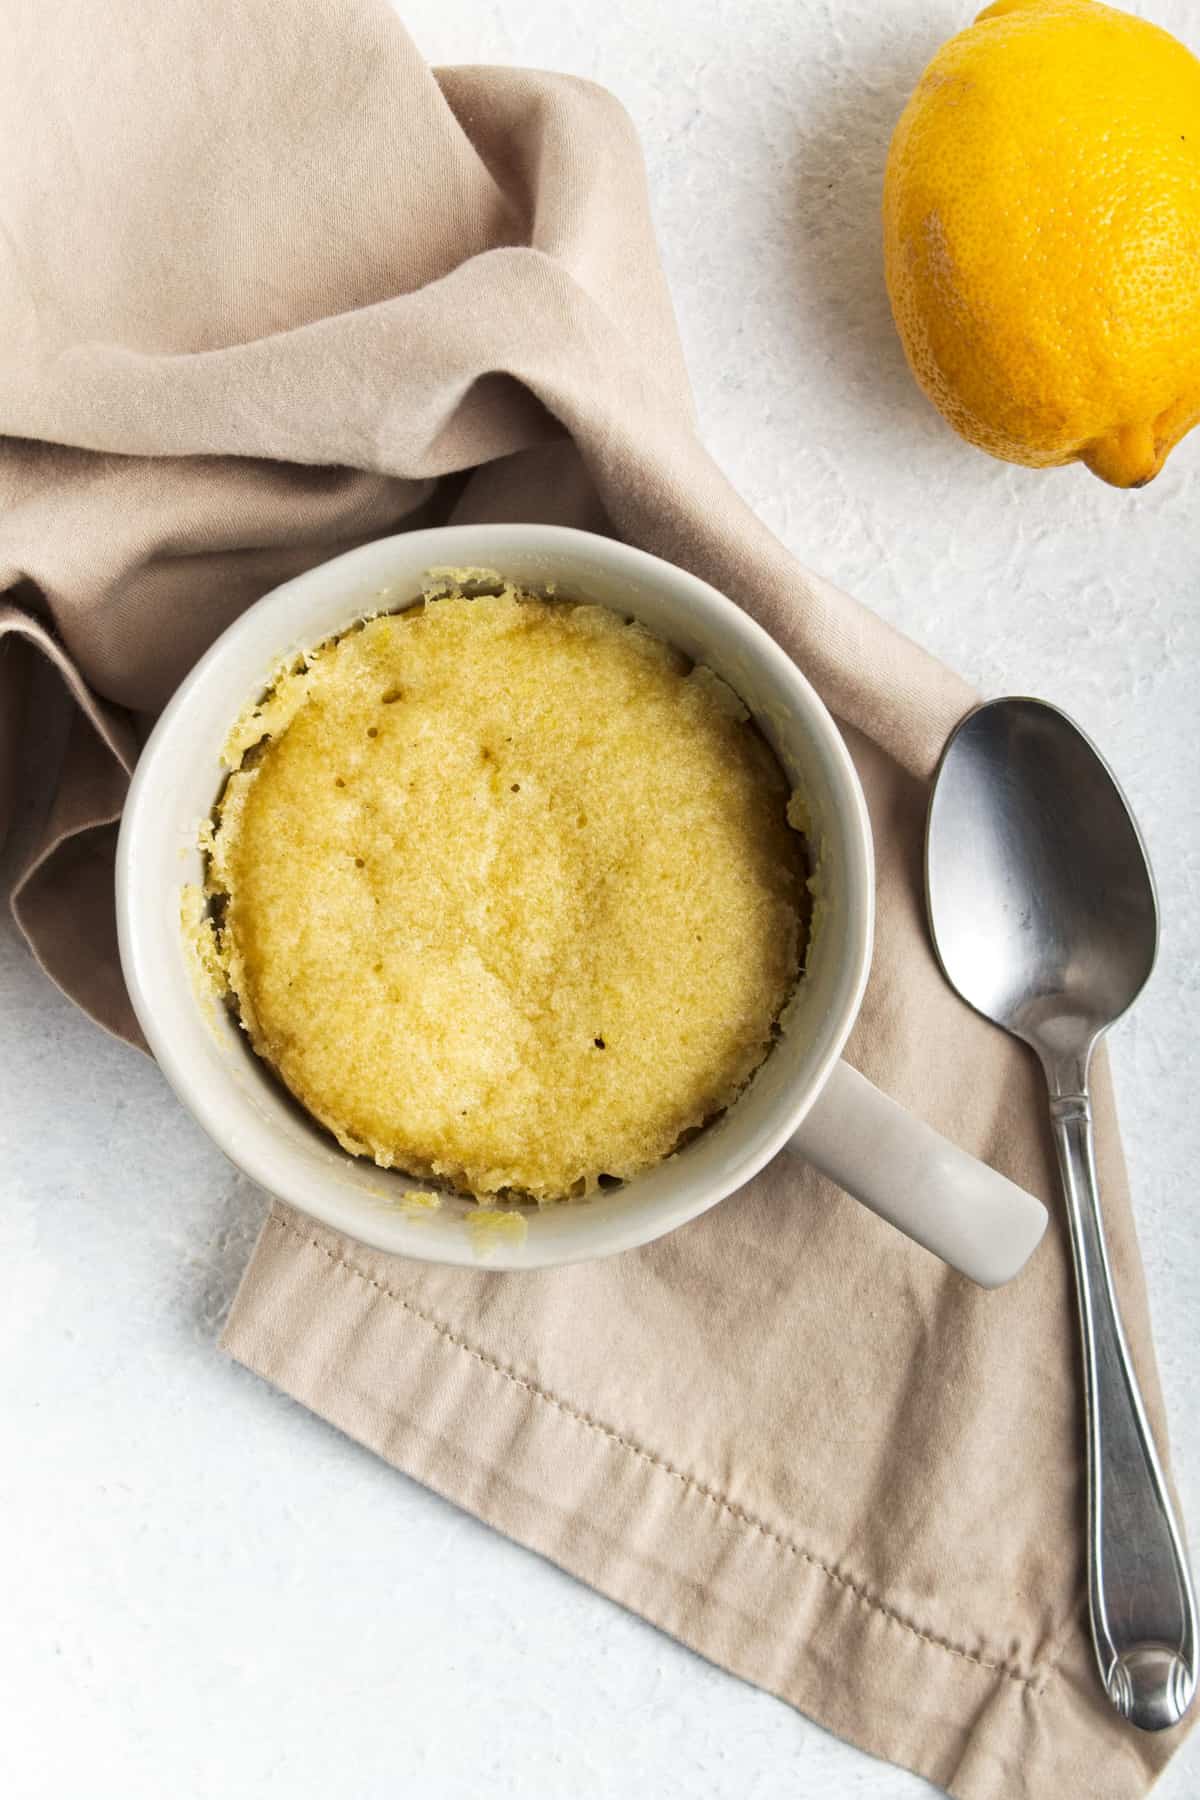 A cake in a mug next to a spoon, a lemon and a napkin.